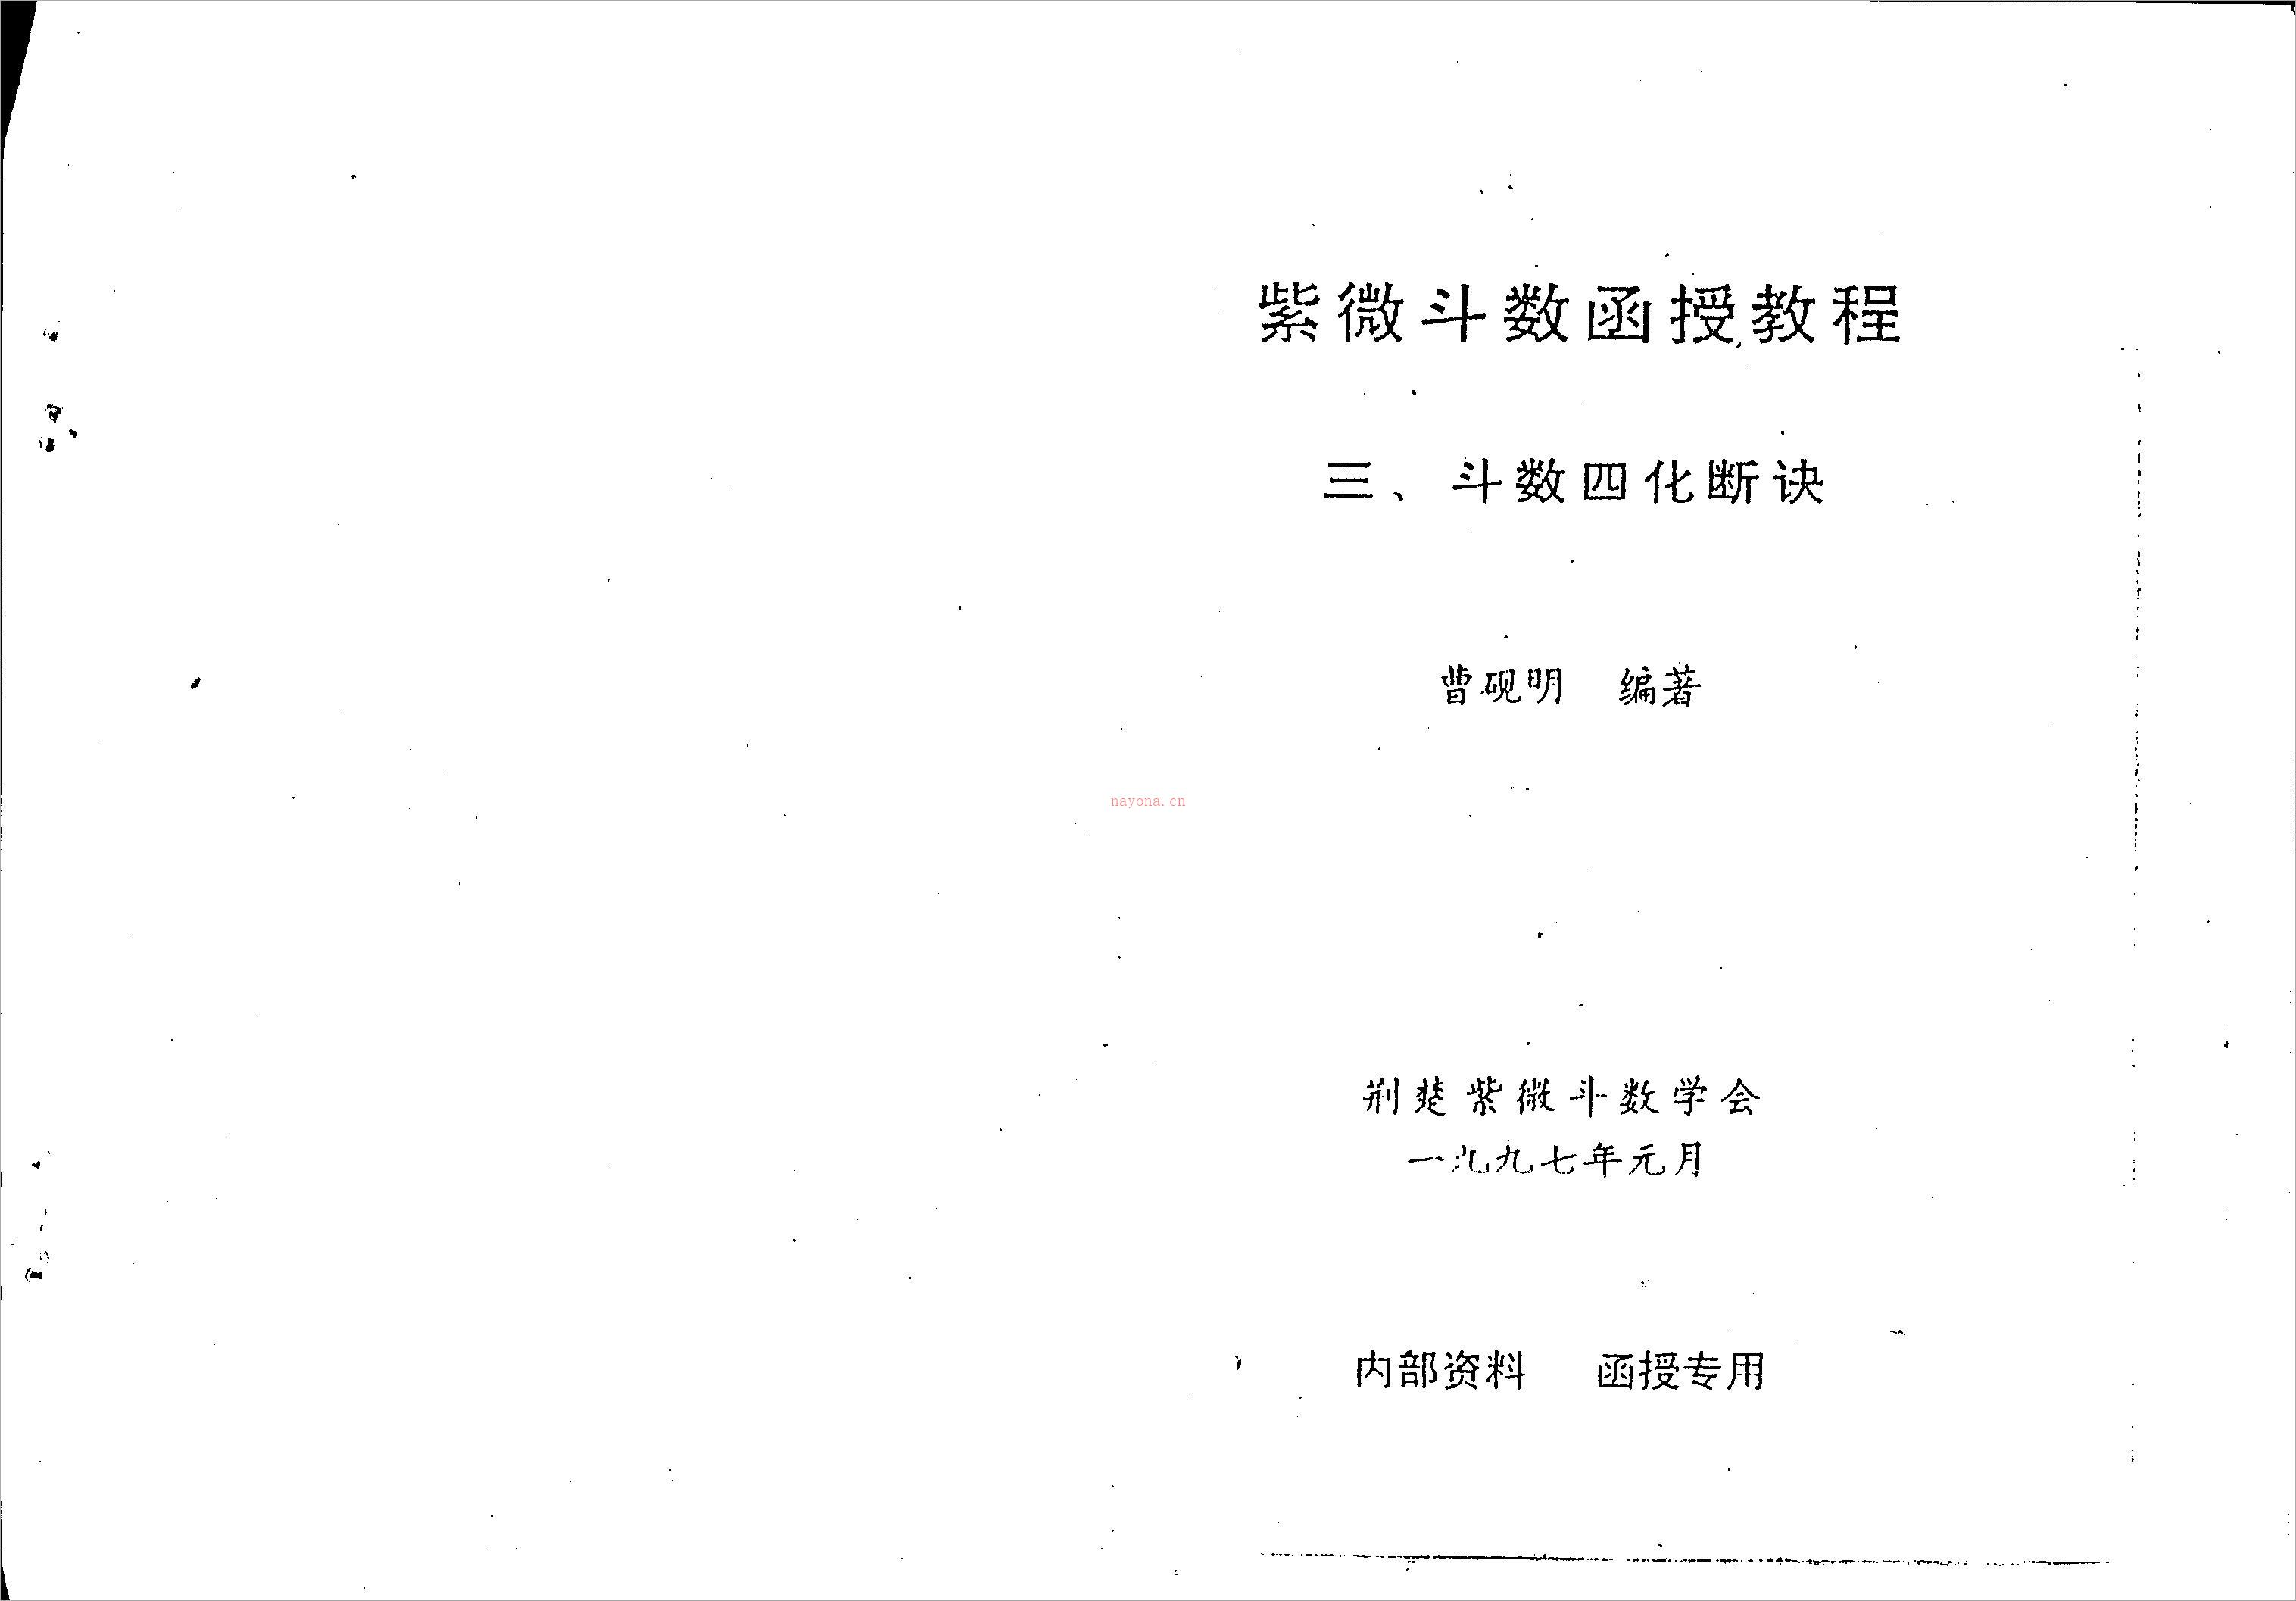 曹砚明-紫微斗数函授教程之三斗数四化断诀（59页）.pdf 百度网盘资源